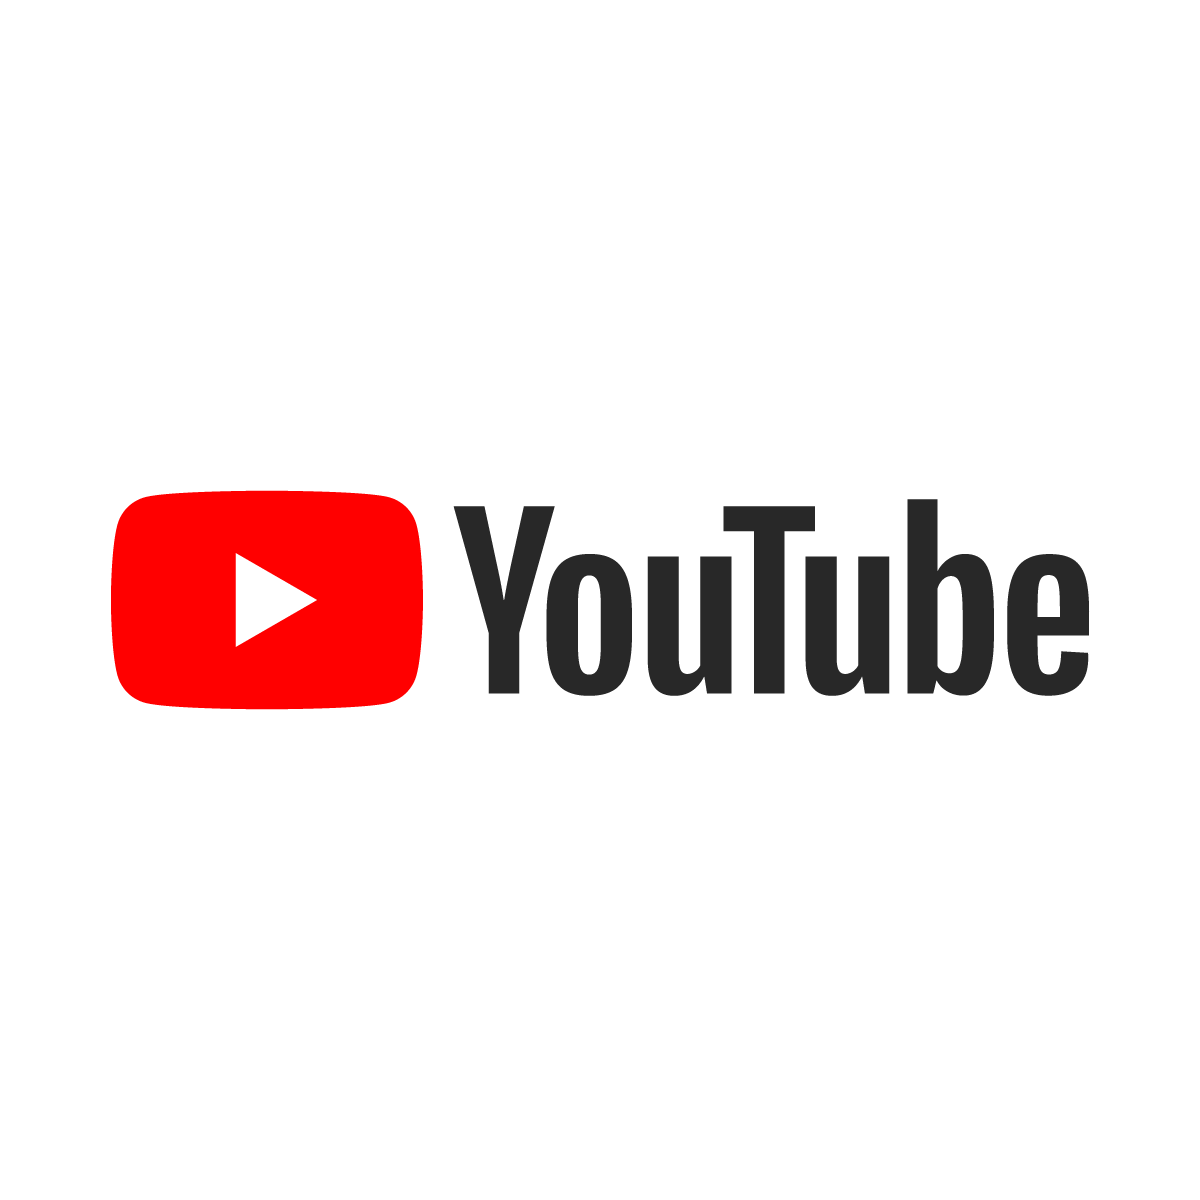 يوتيوب لن يحذف فيديوهات الحسابات غير النشطة